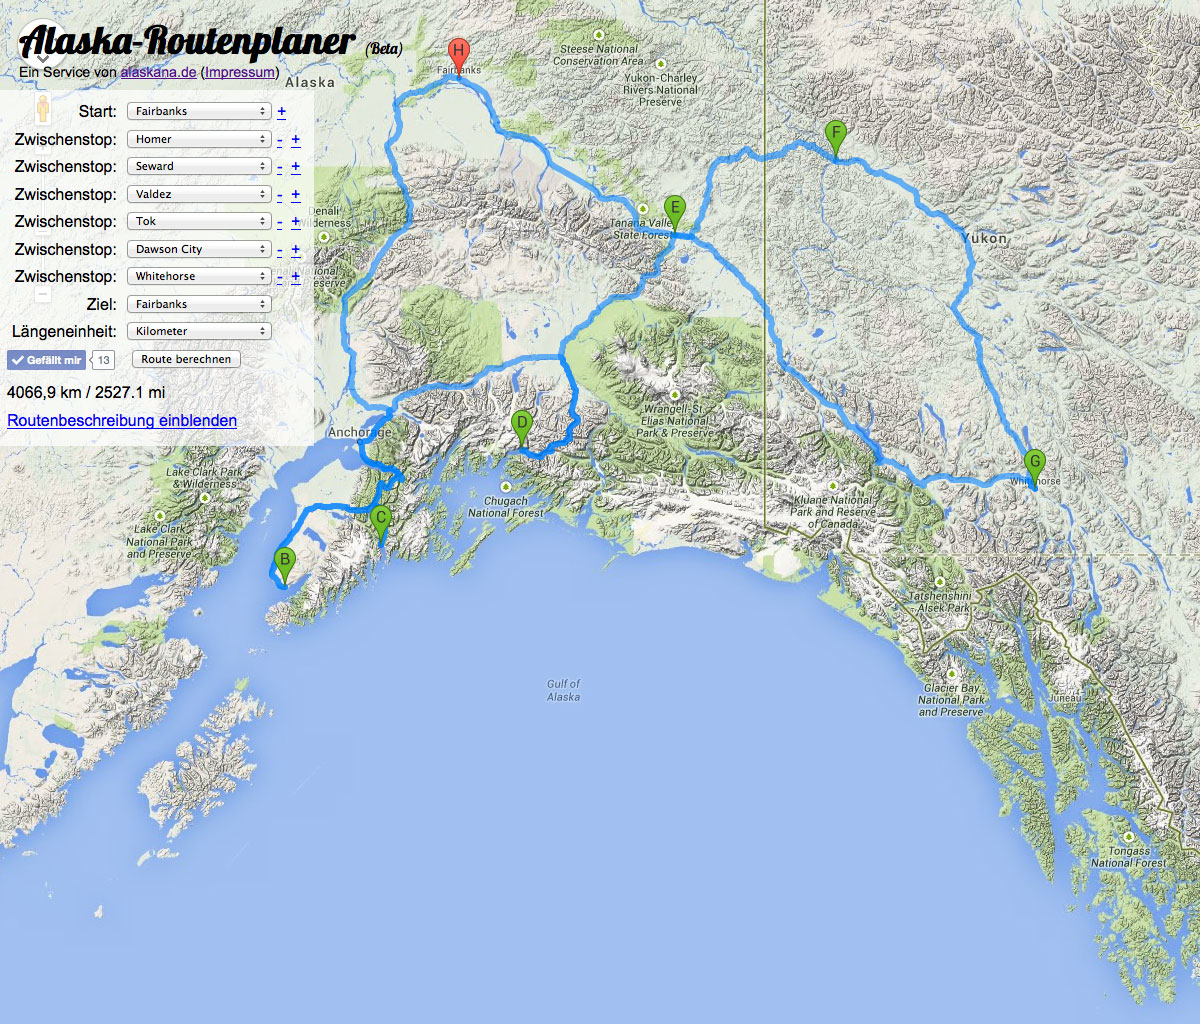 (c) Alaska-routenplaner.de